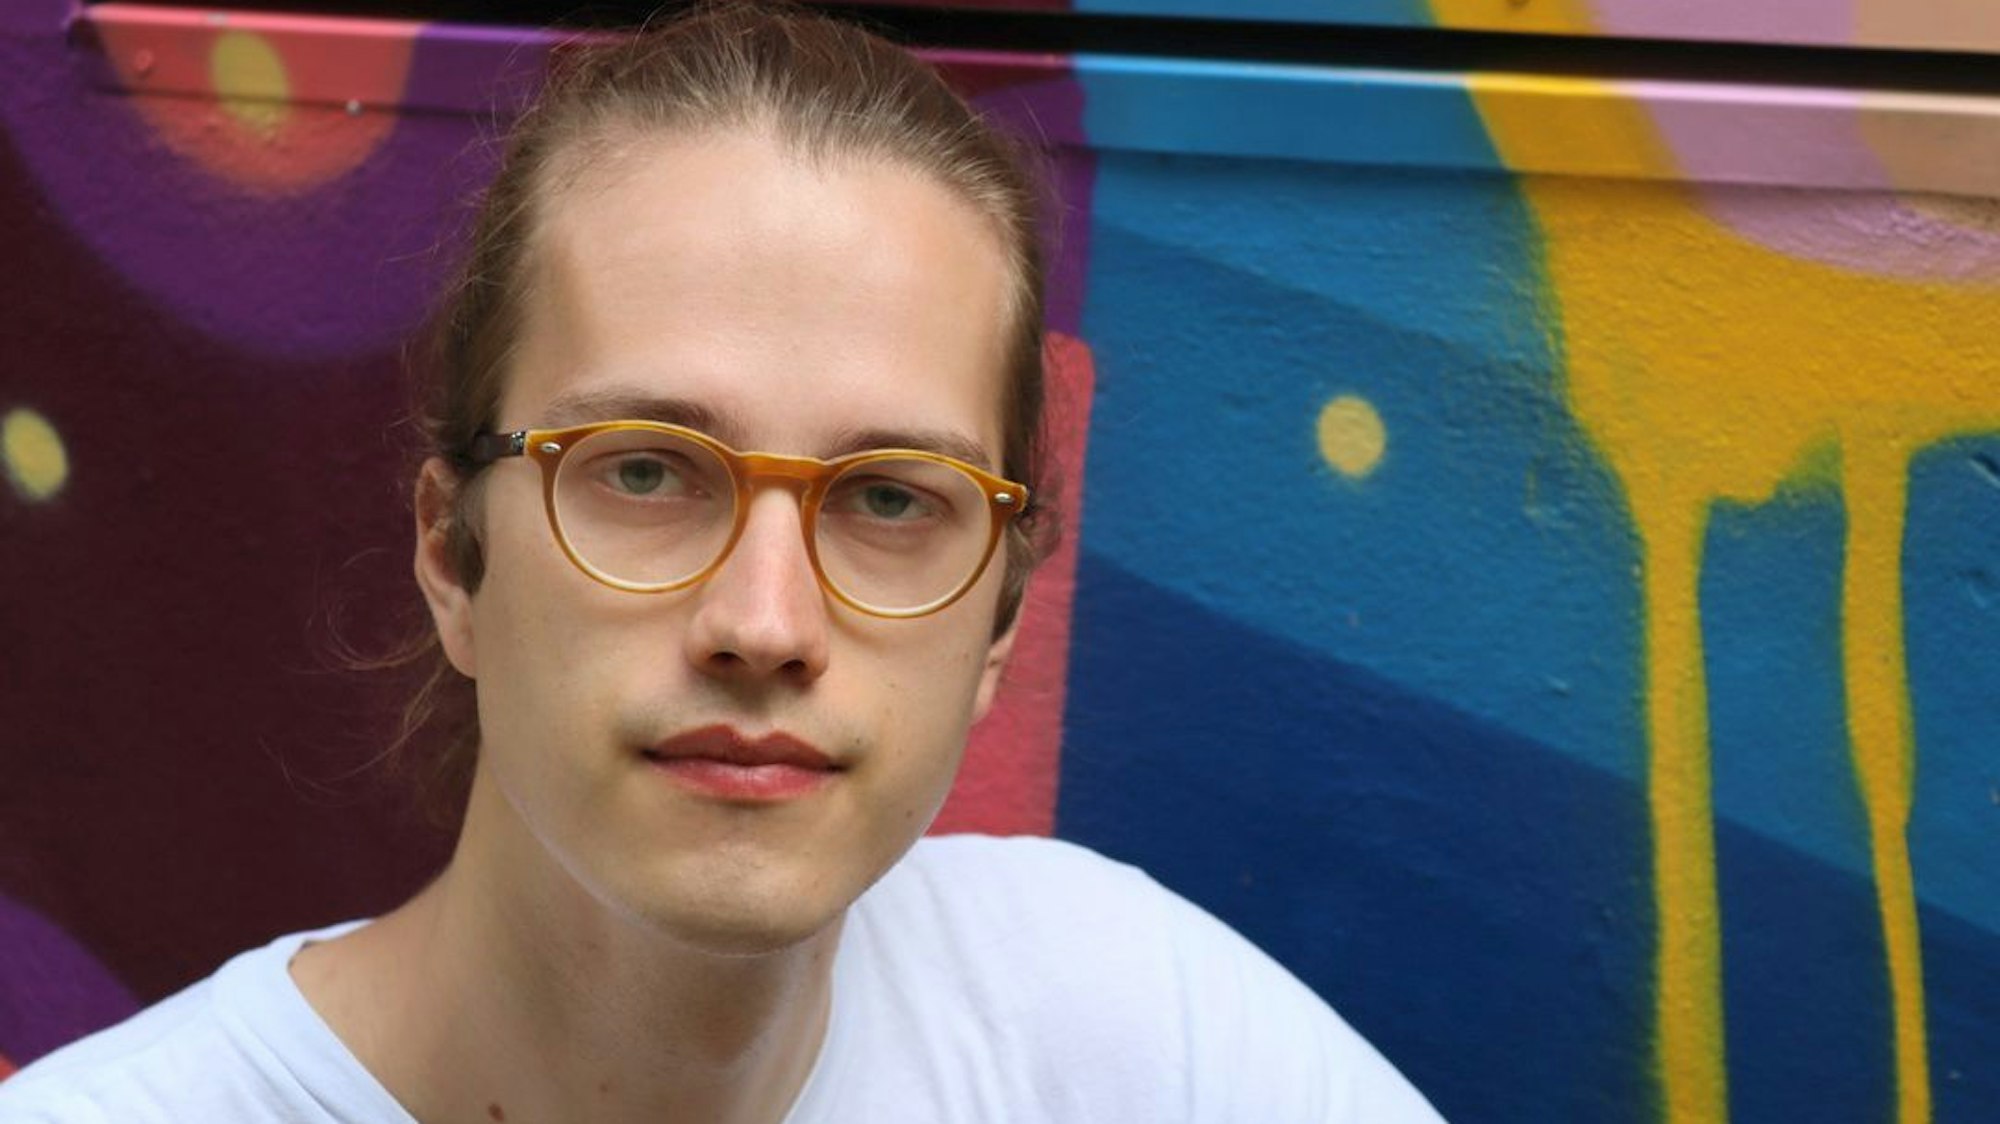 Das Bild zeigt Simon Bahr, er schaut in die Kamera und trägt eine Brille und ein weißes T-Shirt. Im Hintergrund bunte, geometrische Formen an einer Wand.